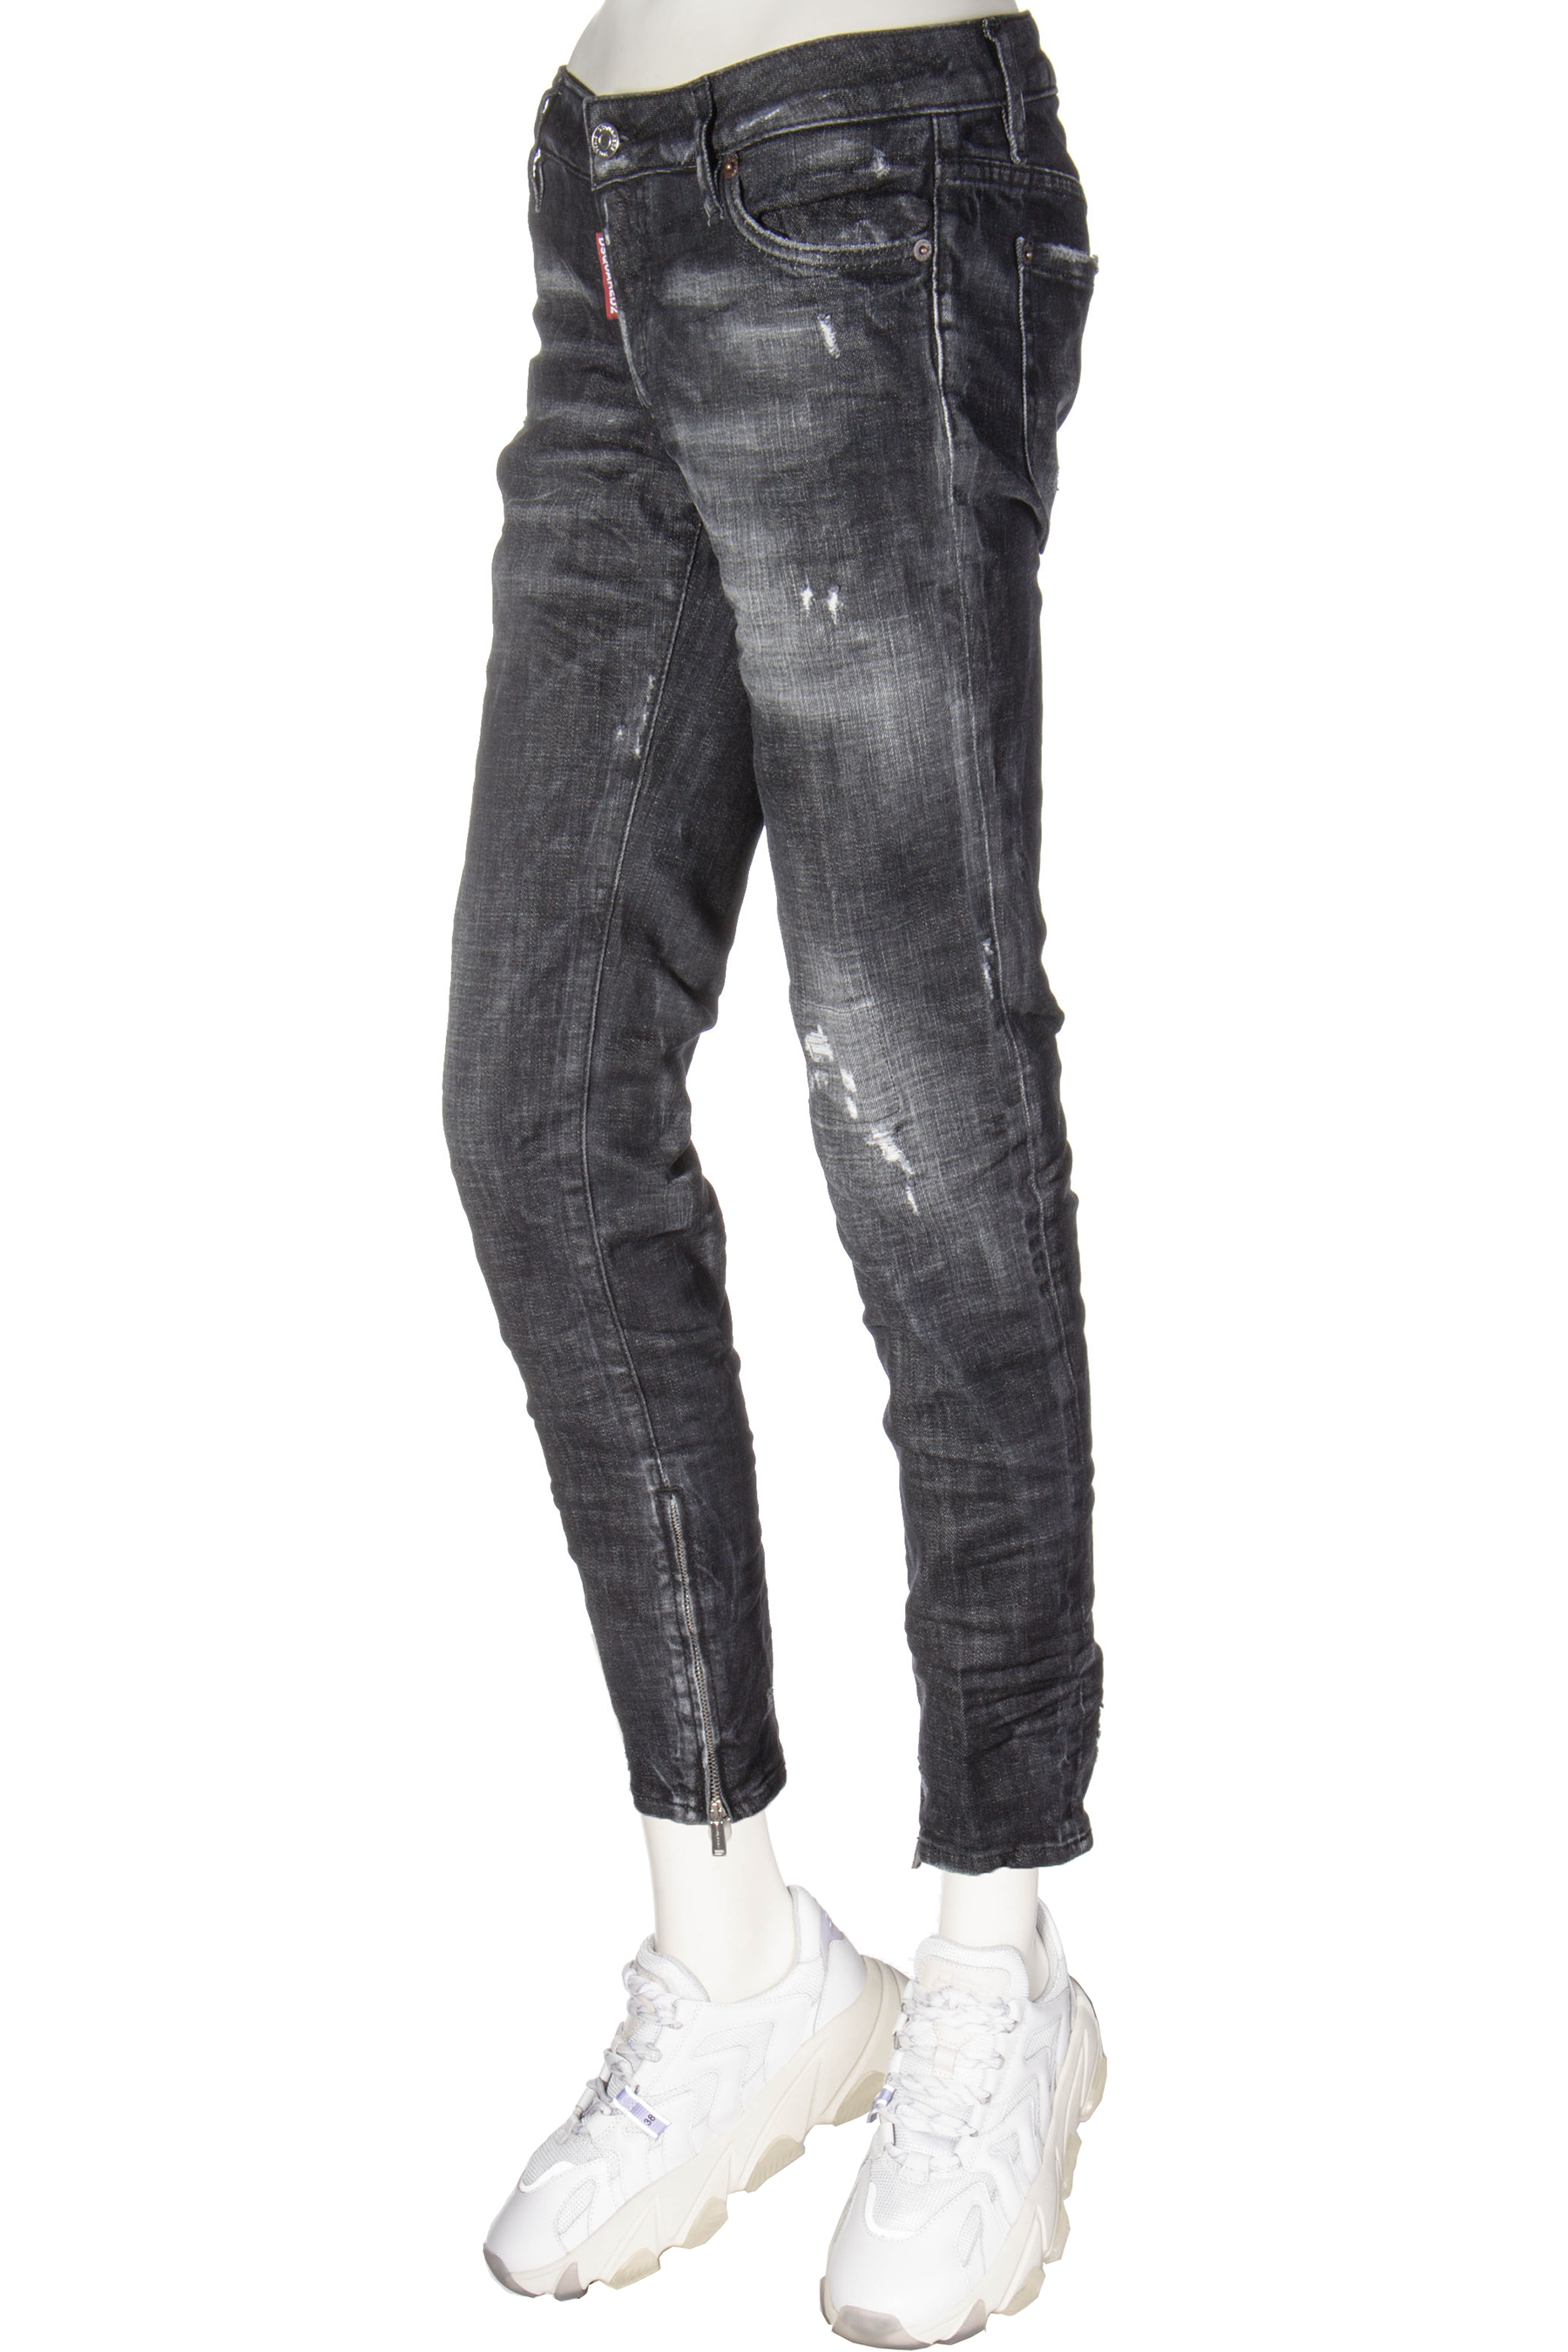 dsquared2 black skinny jeans